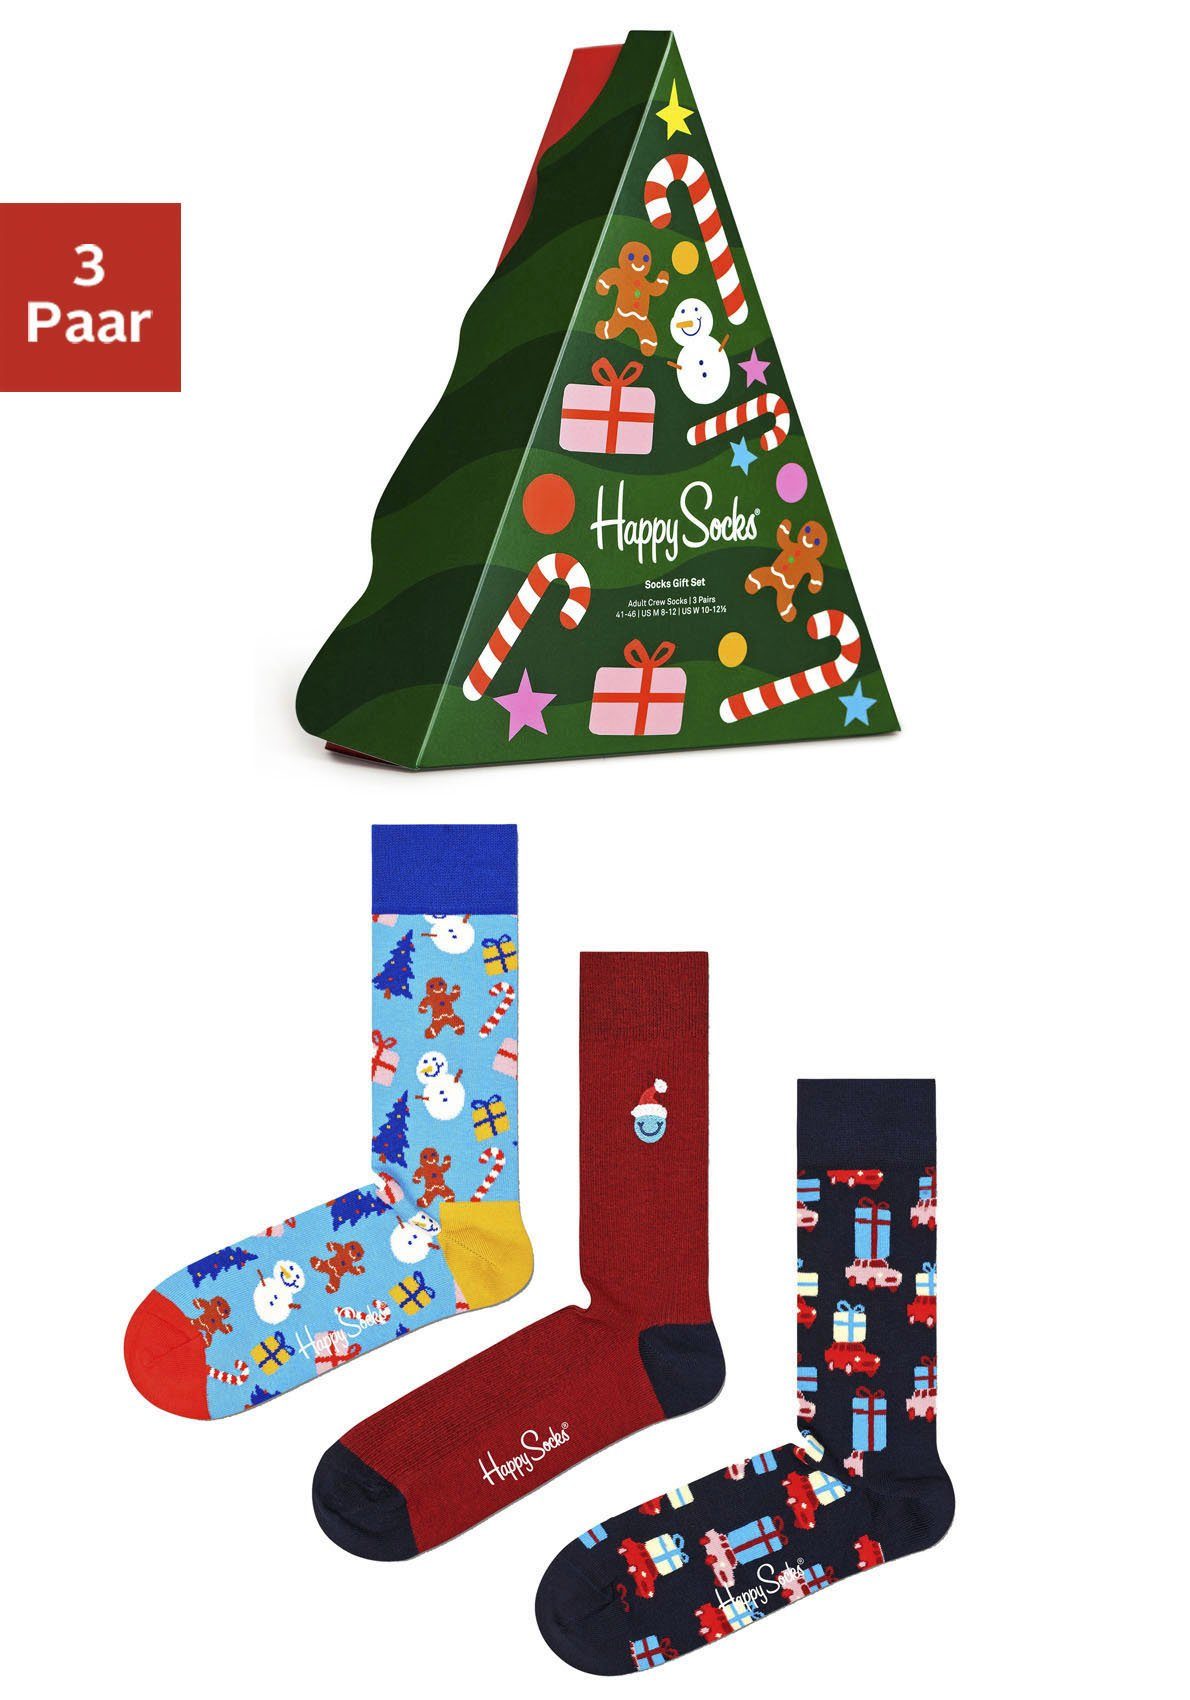 Happy Socks Socken (3-Paar) mit winterlich-weihnachtlichen Motiven, Mit  winterlich-weihnachtlichen Motiven in bunten Farben